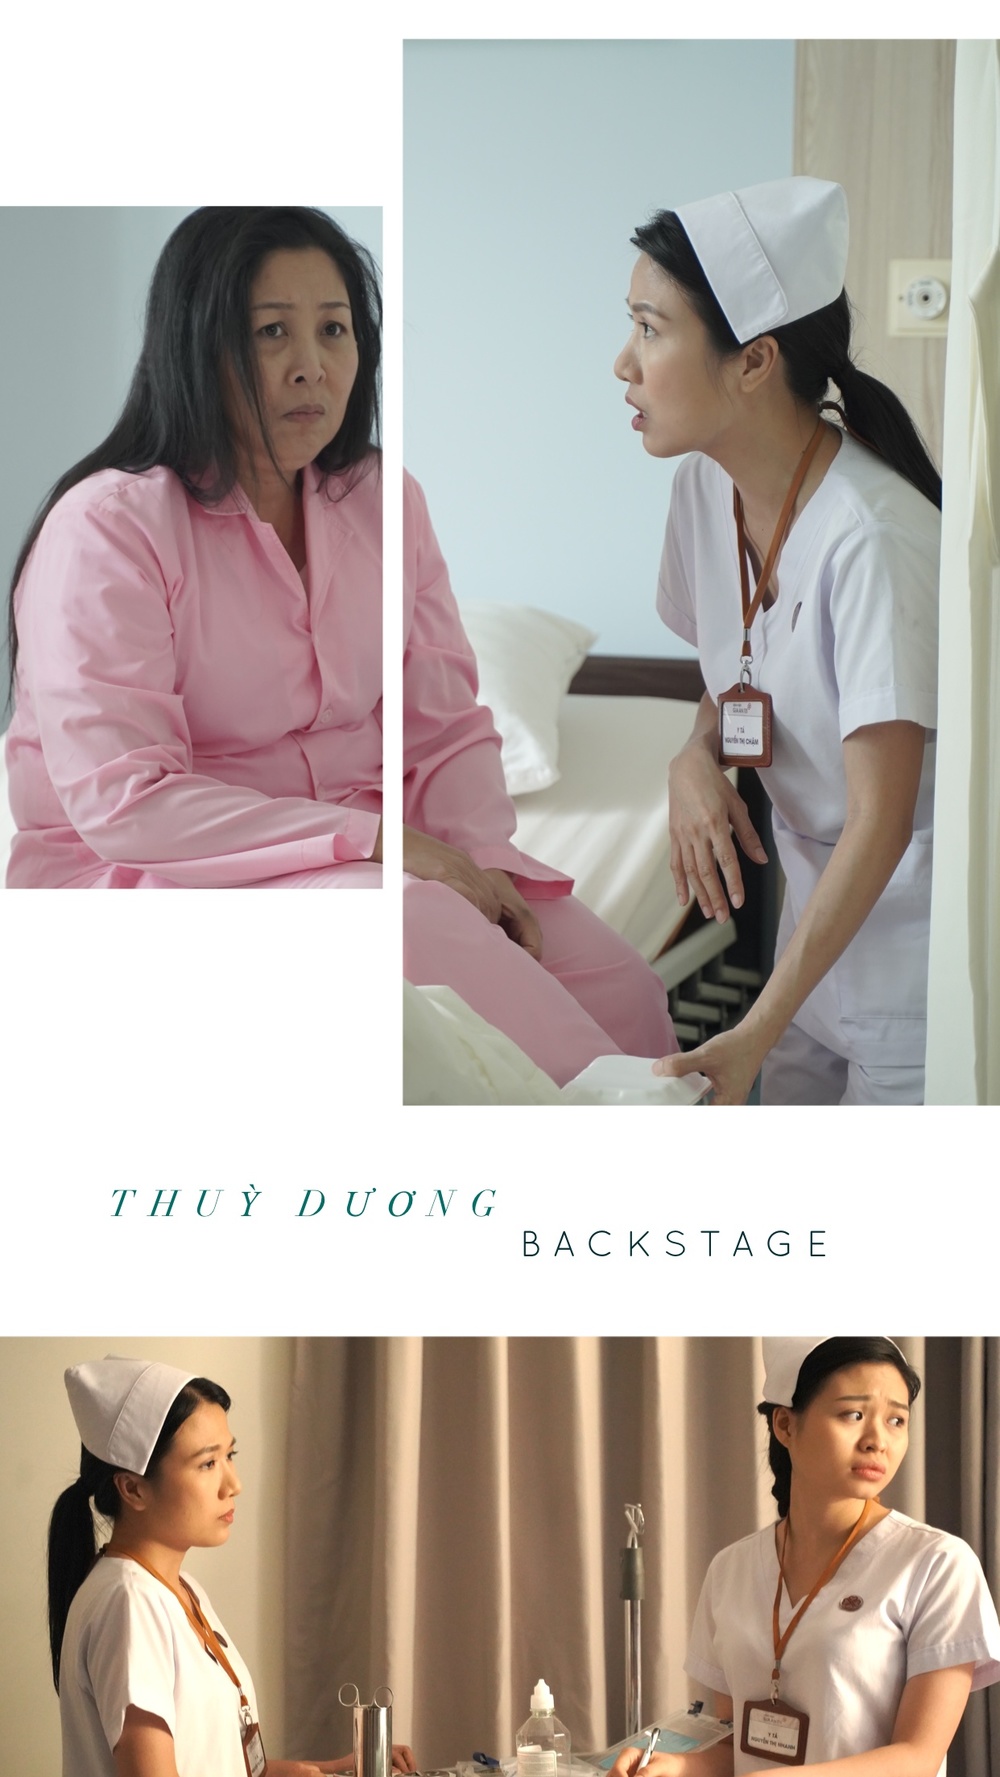  
Vai diễn y tá thứ 3 trong sự nghiệp diễn xuất của Thùy Dương.